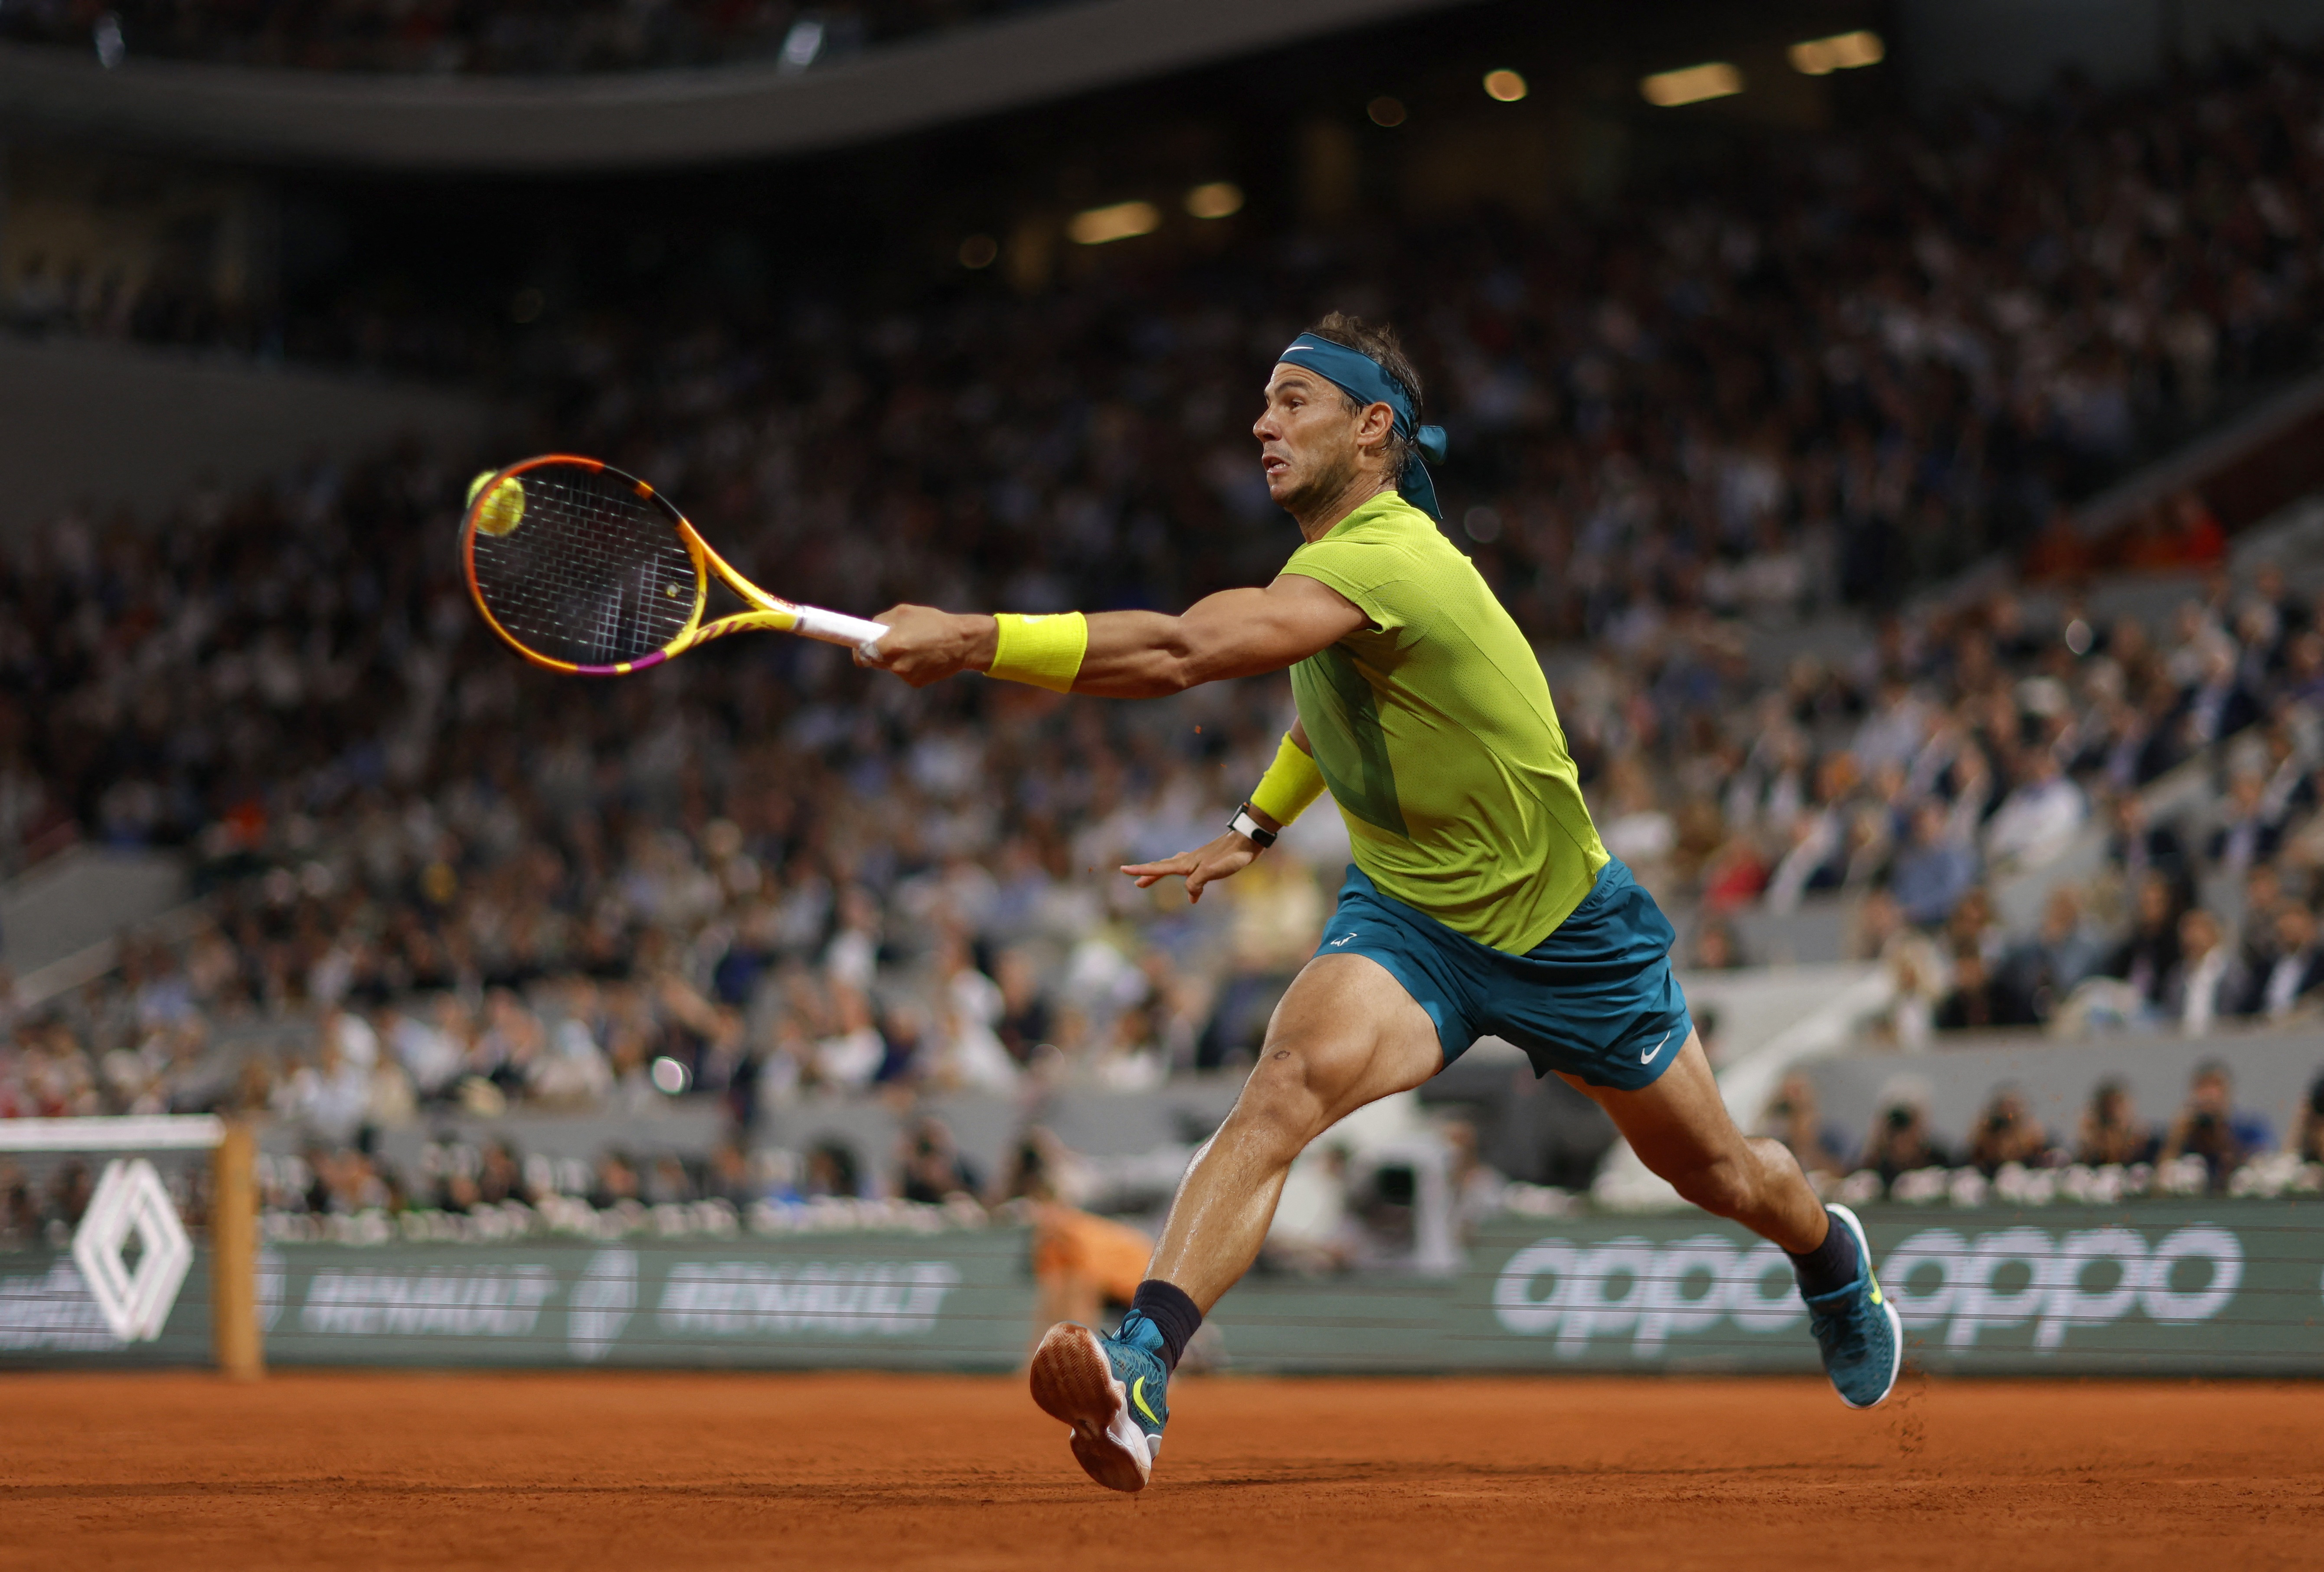 El rey del polvo de ladrillo: Rafael Nadal buscará ganar su 14ª corona en Roland Garros (Foto: Reuters)